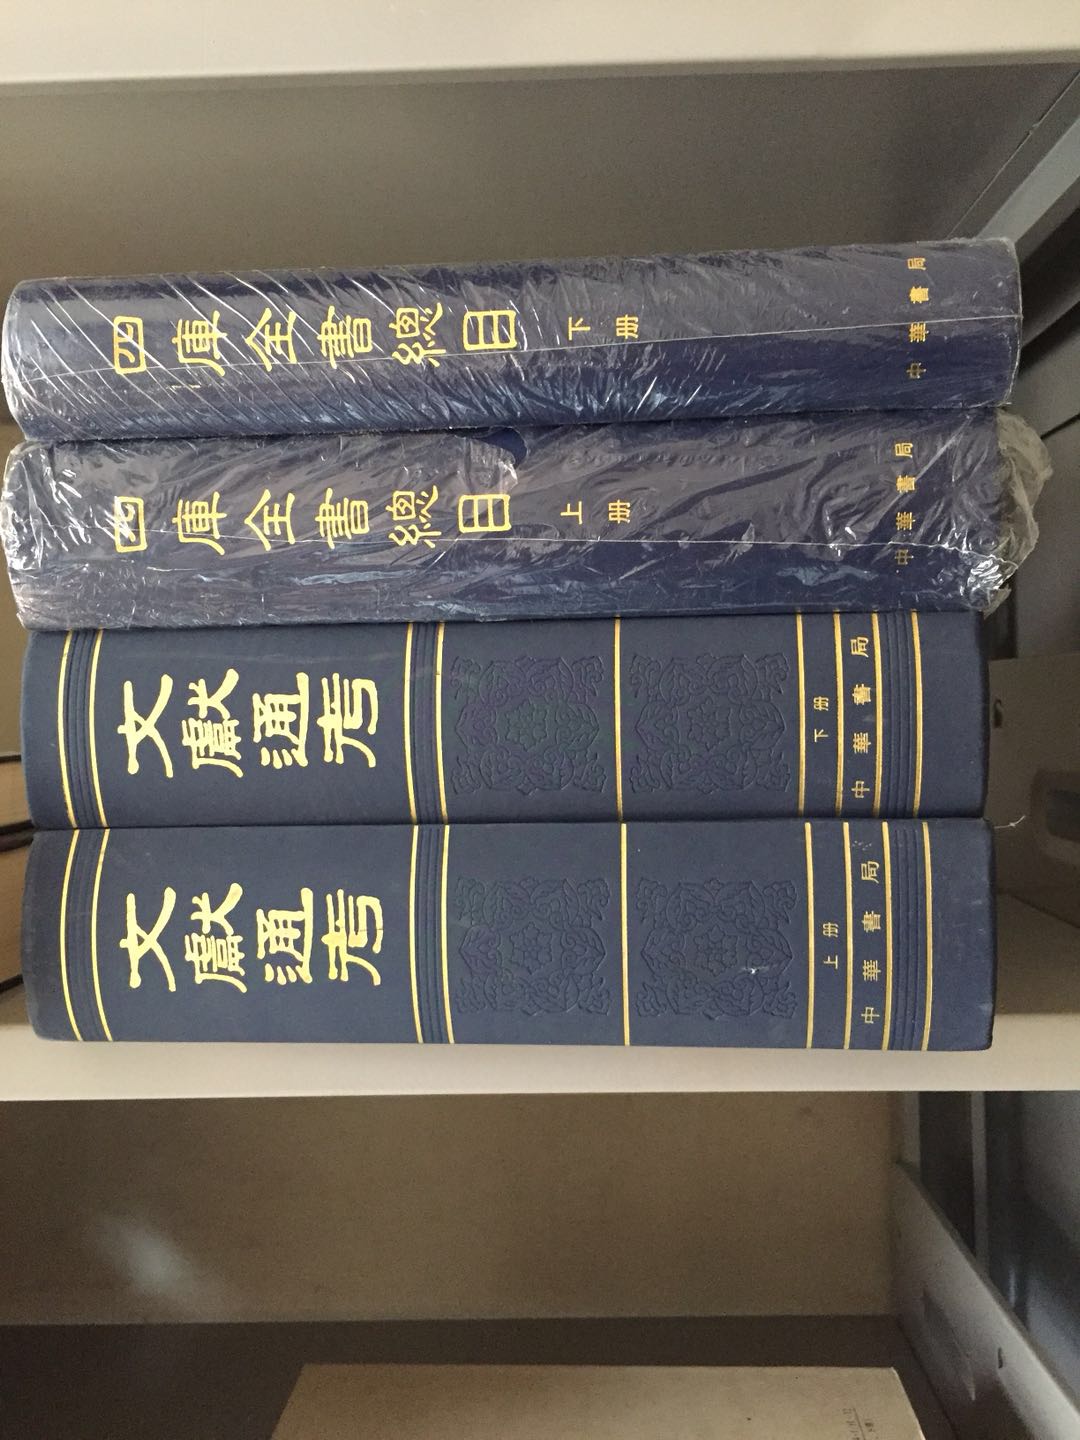 北京海淀区多年收藏旧书回收店回收中心